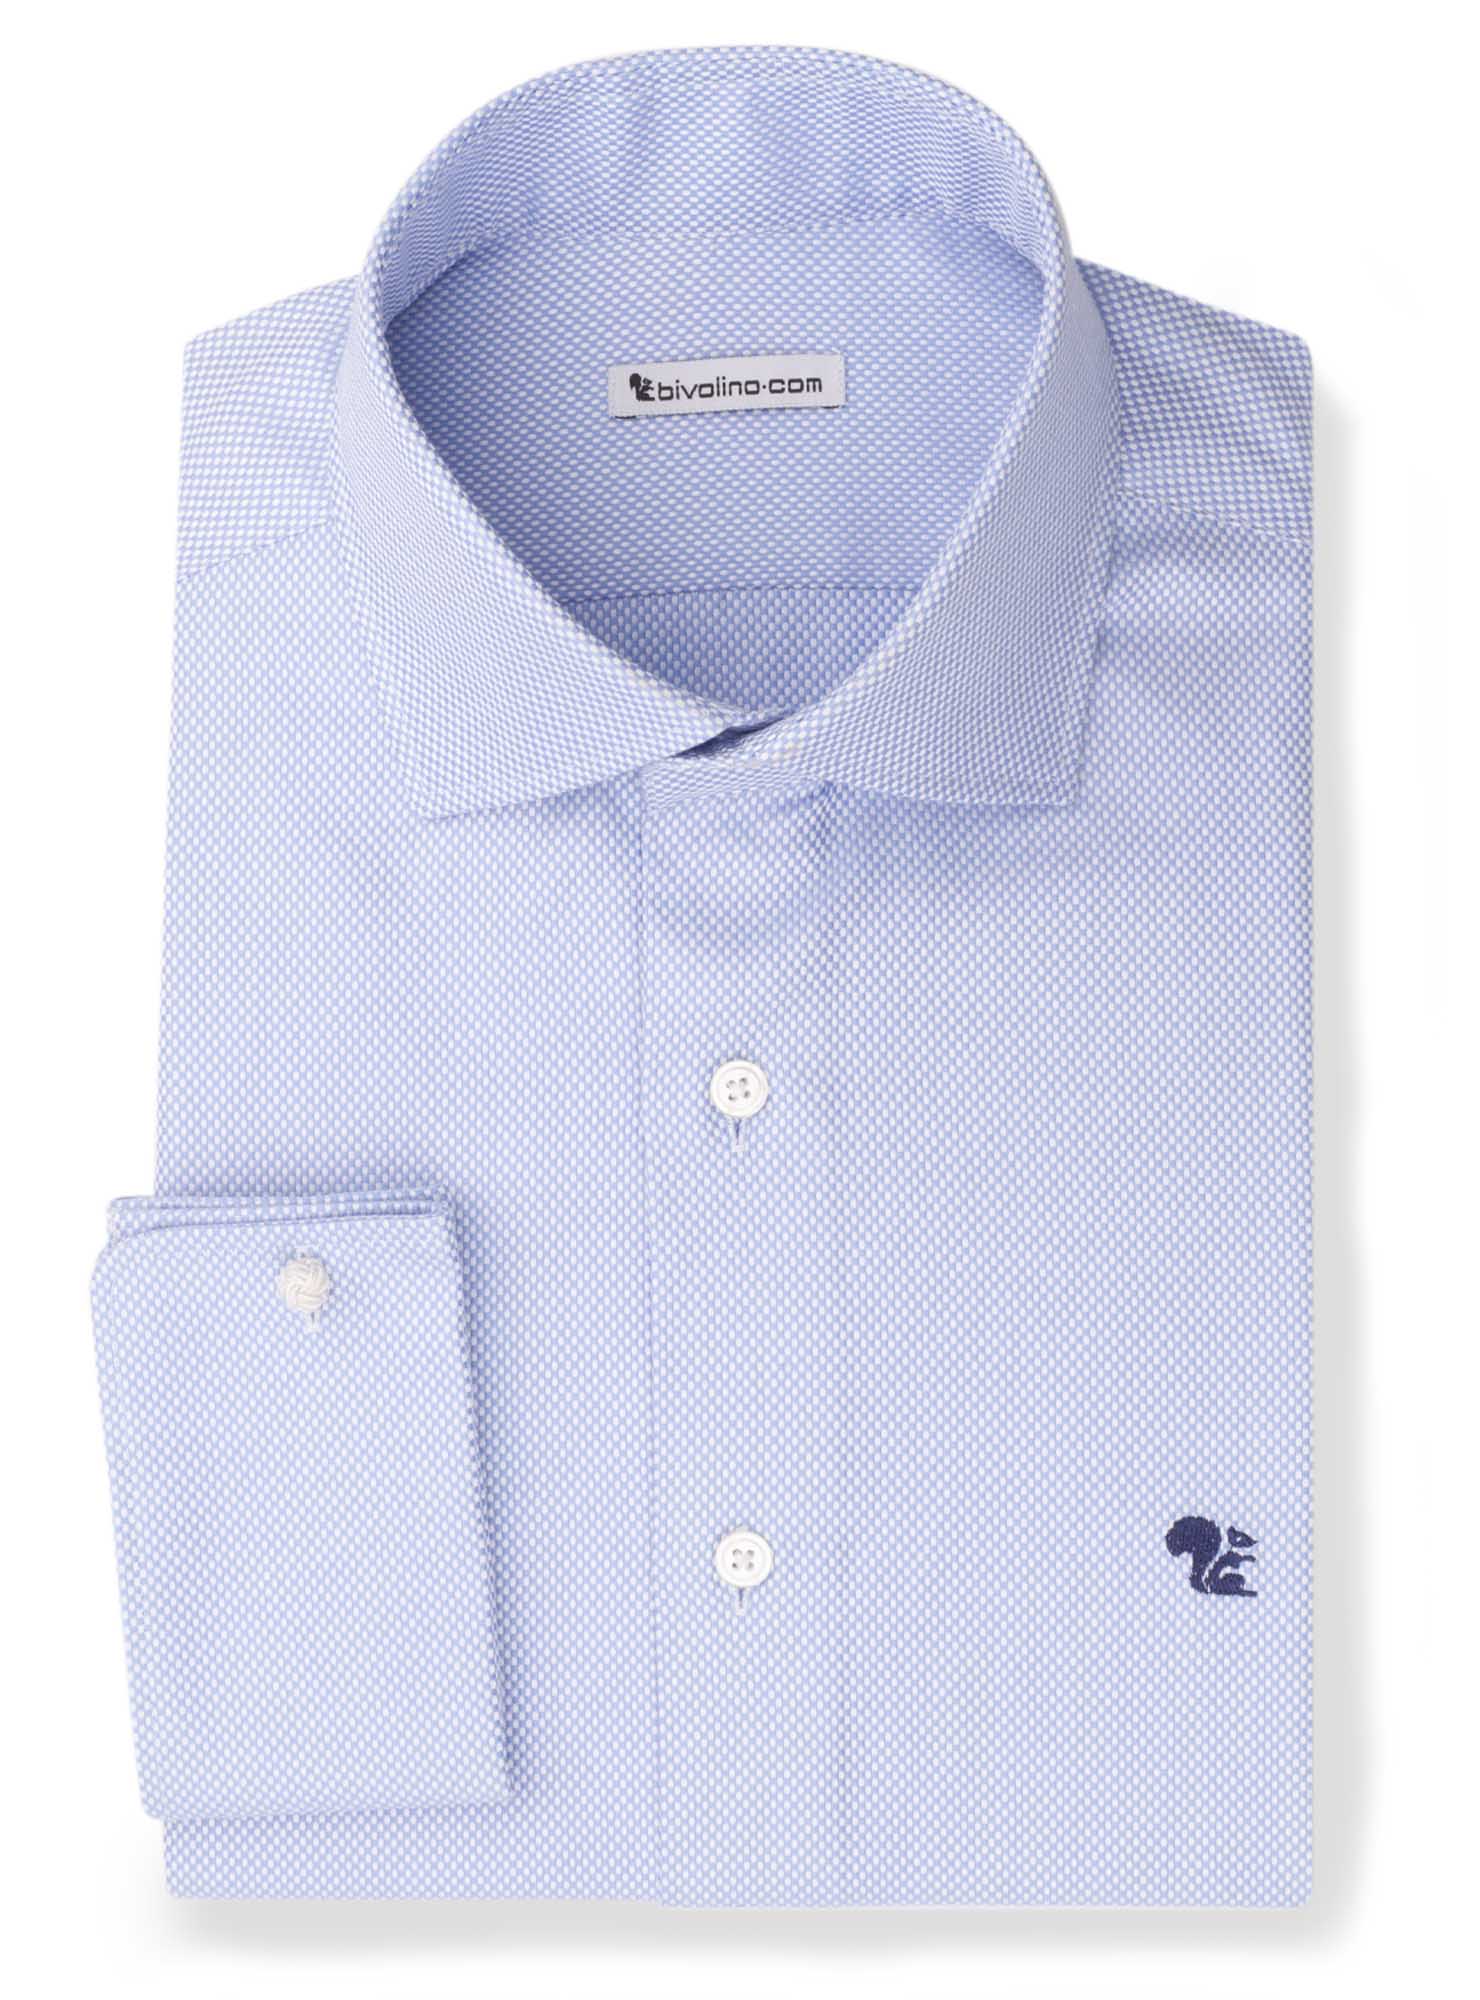 BIDFILIANO - blauw dobby overhemd - Bedford 2 Top Merken Winkel